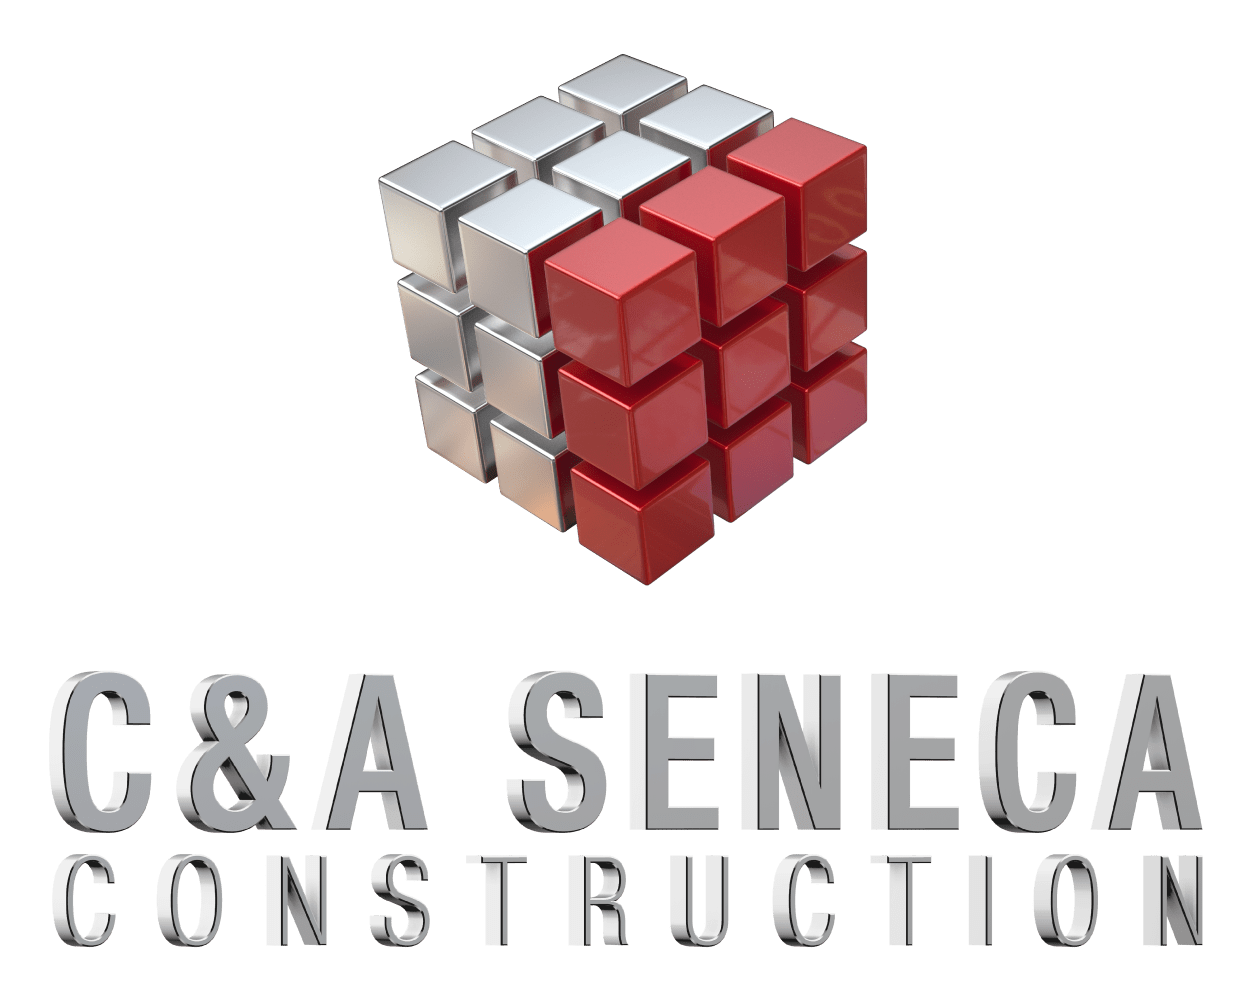 C&A Seneca Construction 177